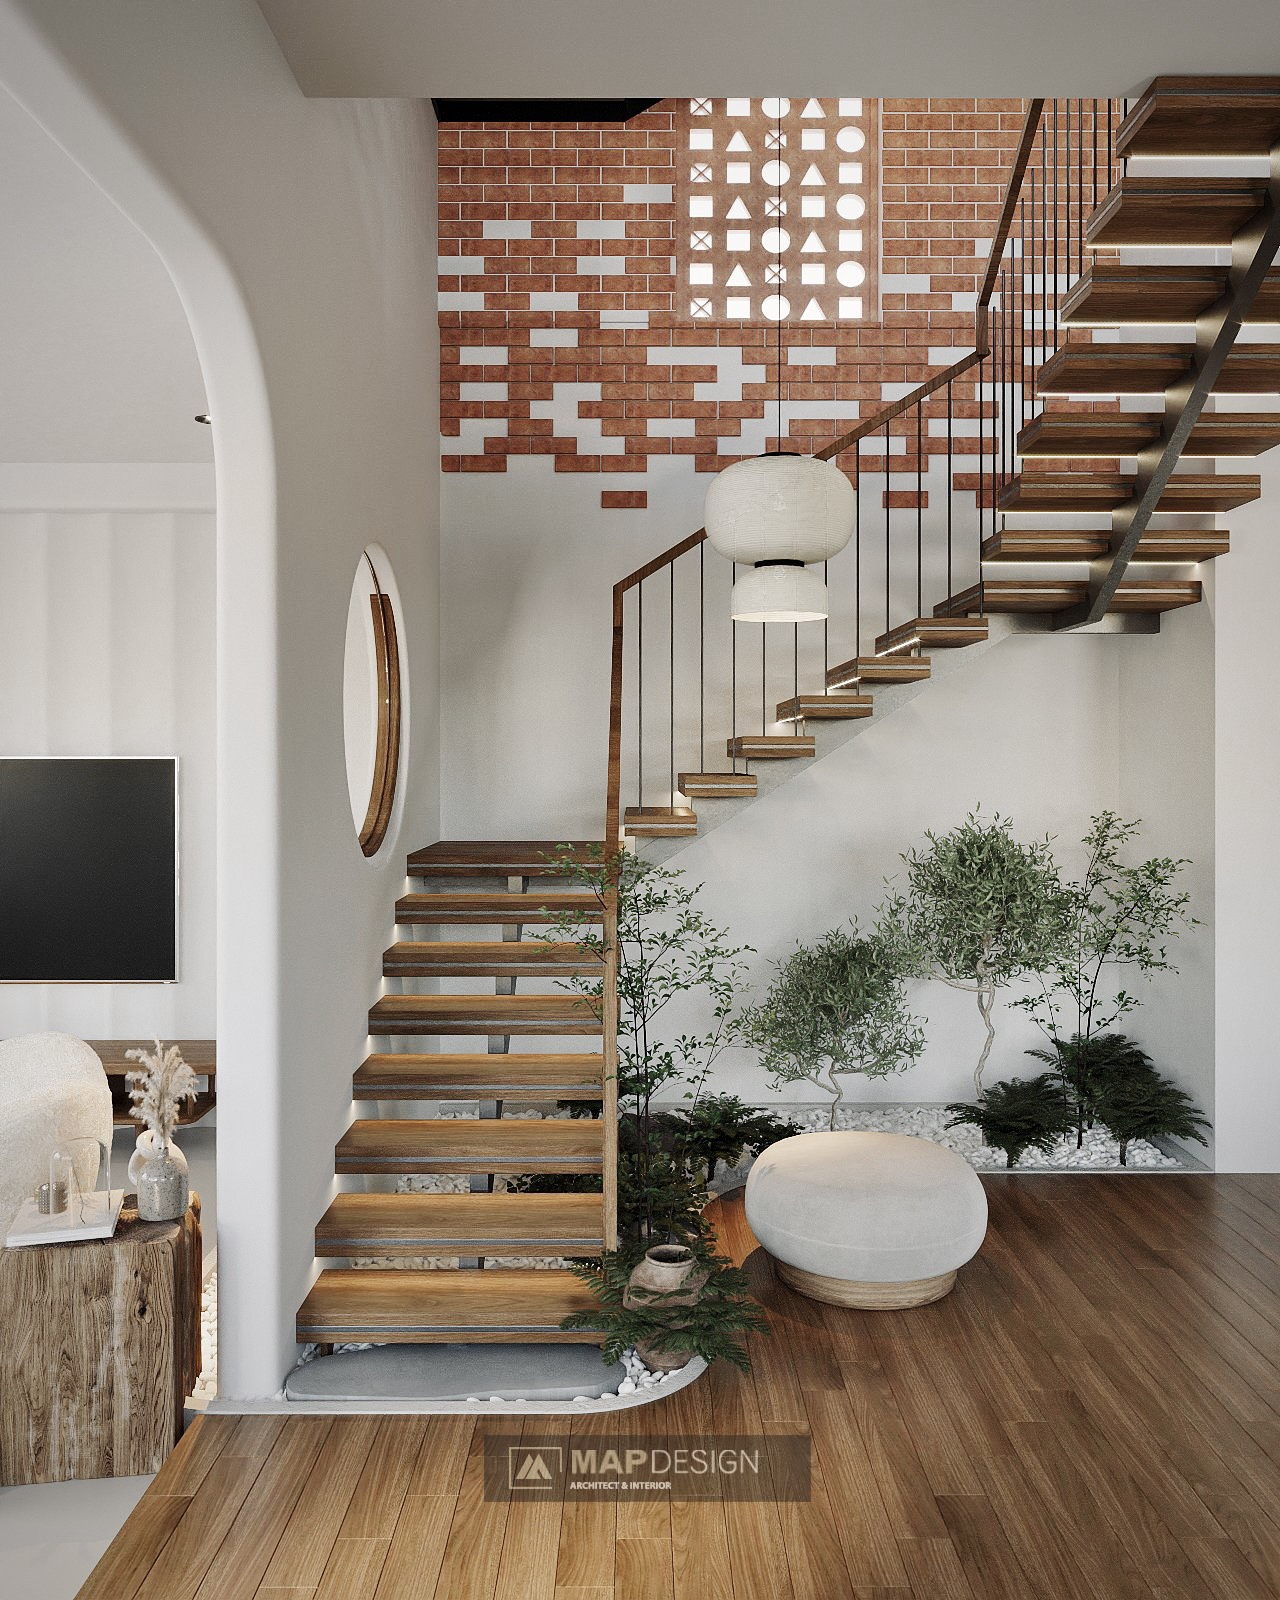 Mẫu vách ngăn cầu thang bằng bê tông đẹp giúp cho ngôi nhà của bạn trở nên cuốn hút hơn. Bạn có thể sử dụng các chi tiết trang trí, kết hợp với vật liệu bê tông để tạo ra những mẫu ngăn vô cùng đẹp mắt, sáng tạo.